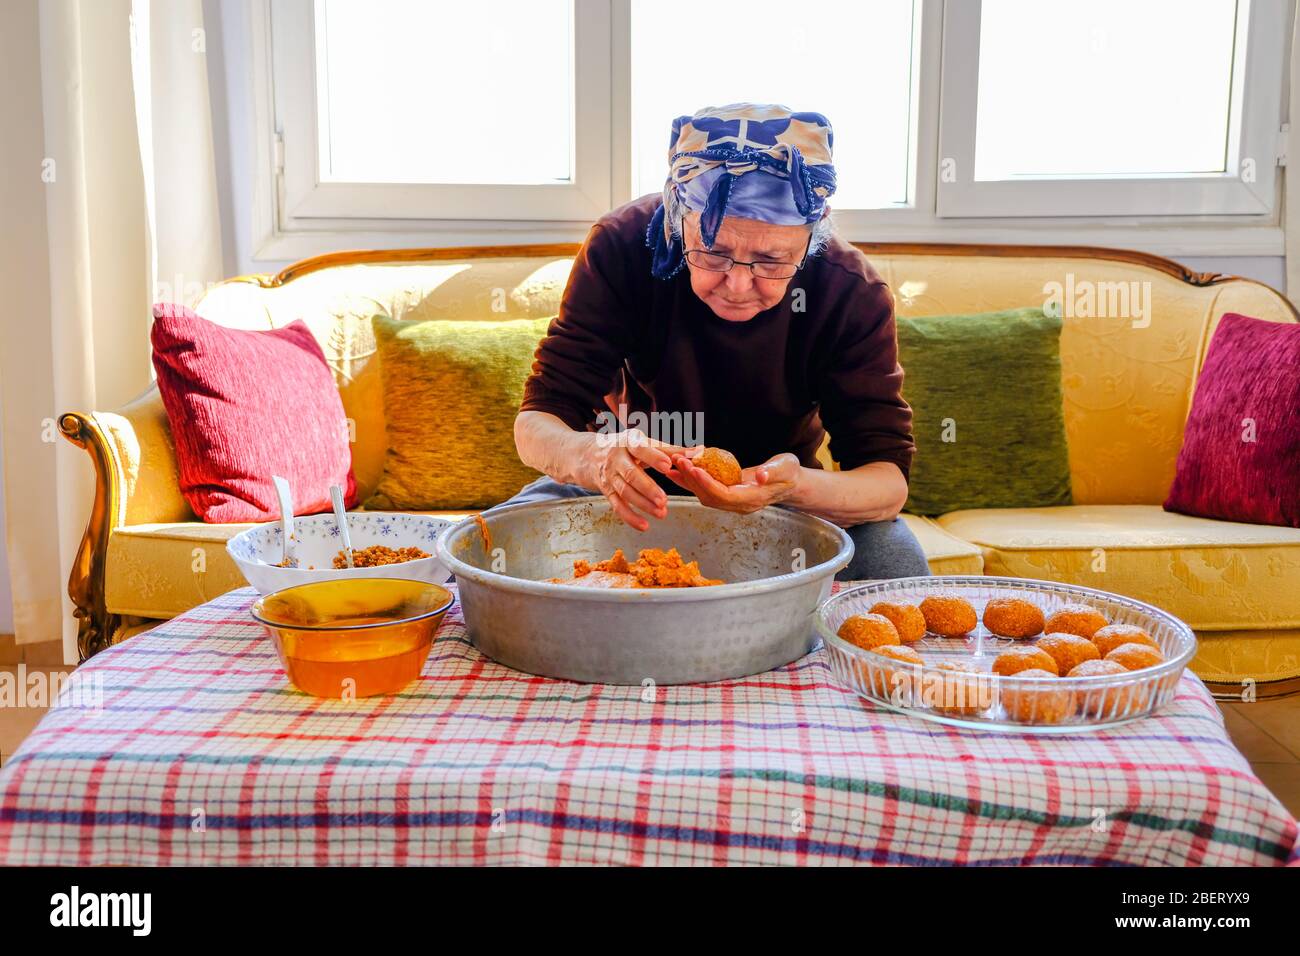 Cuisine turque traditionnelle; boulettes de viande farcies, turques connues sous le nom de 'igli kofte'. Femme faisant des boulettes de viande farcies à la maison. Banque D'Images